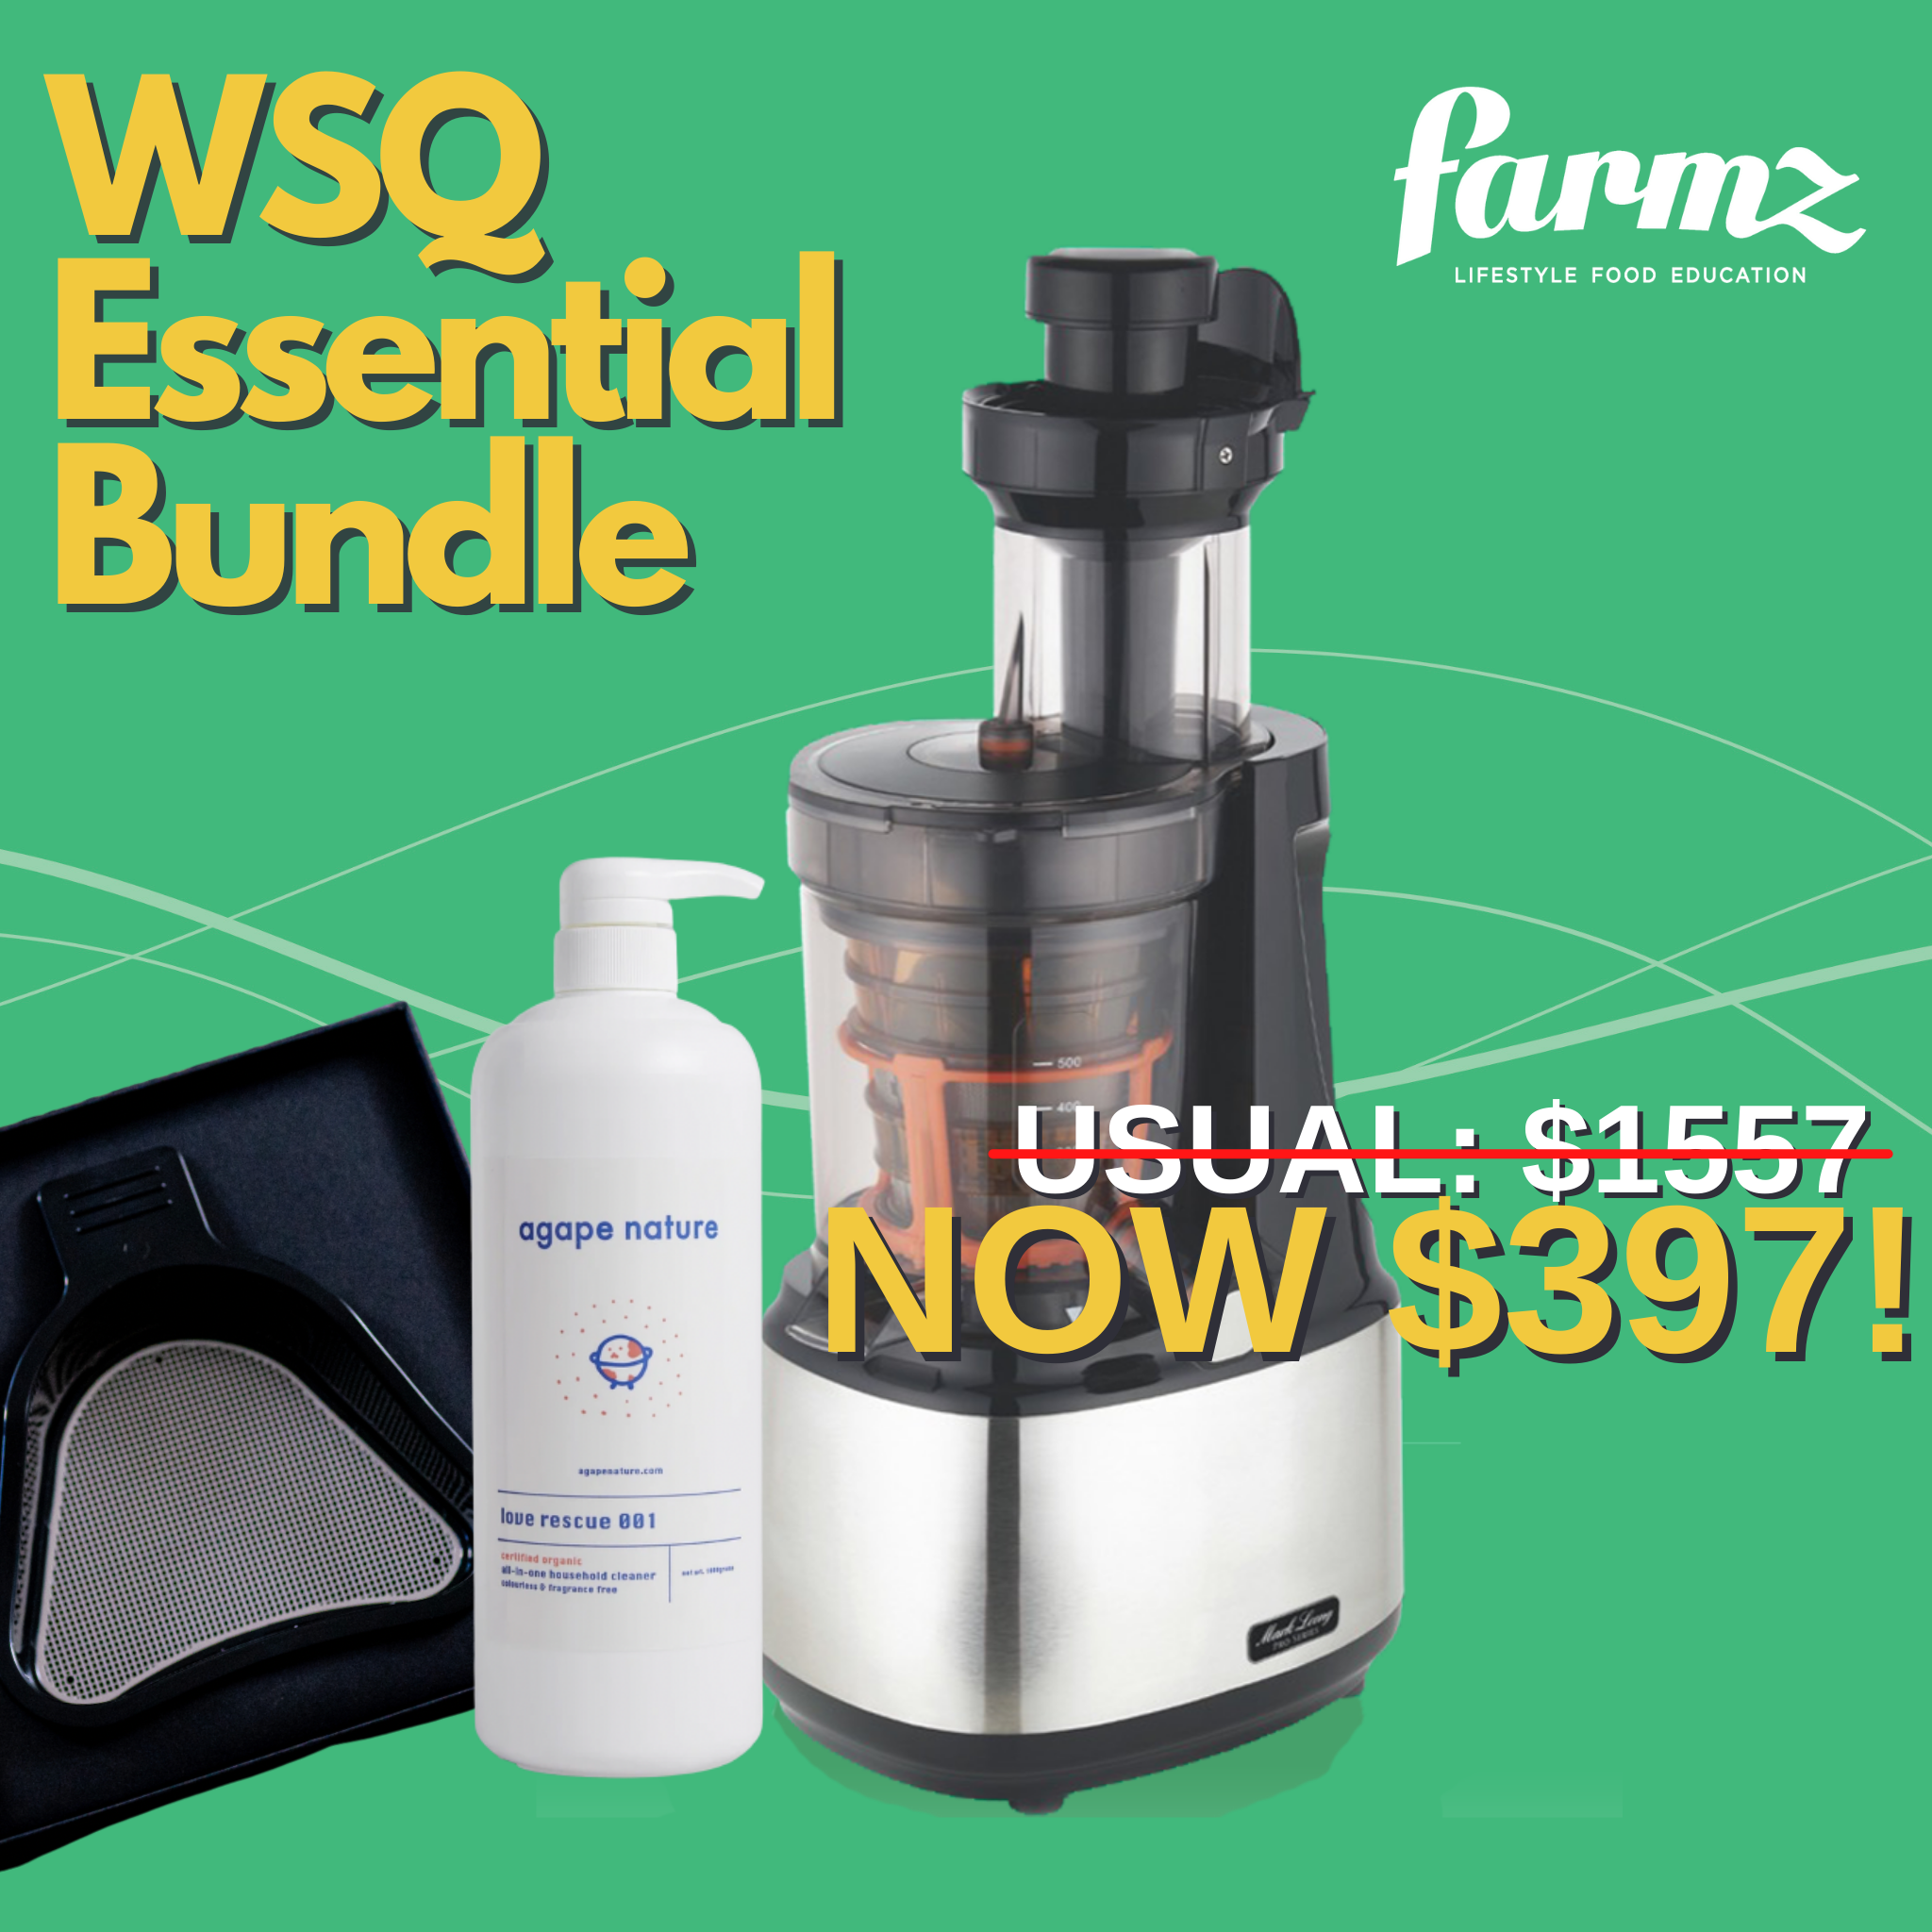 Farmz WSQ Essential Bundle